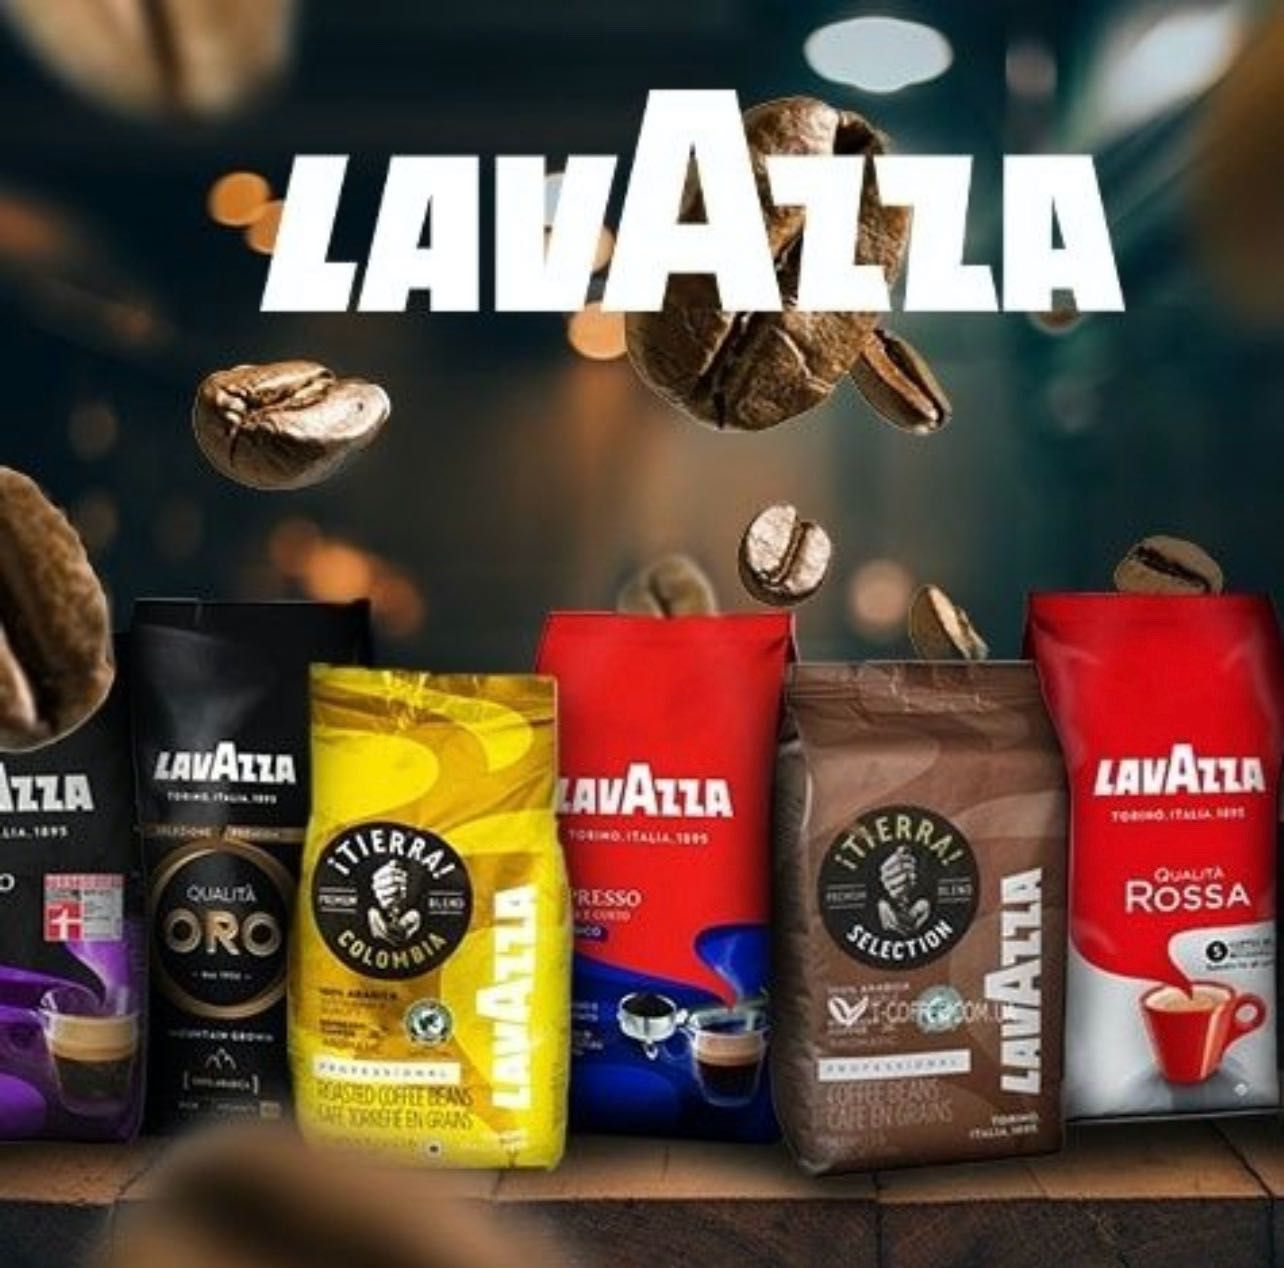 ОПТ! Кава мелена 250грн Лавацца Lavazza кофе в зернах! Далмаєр